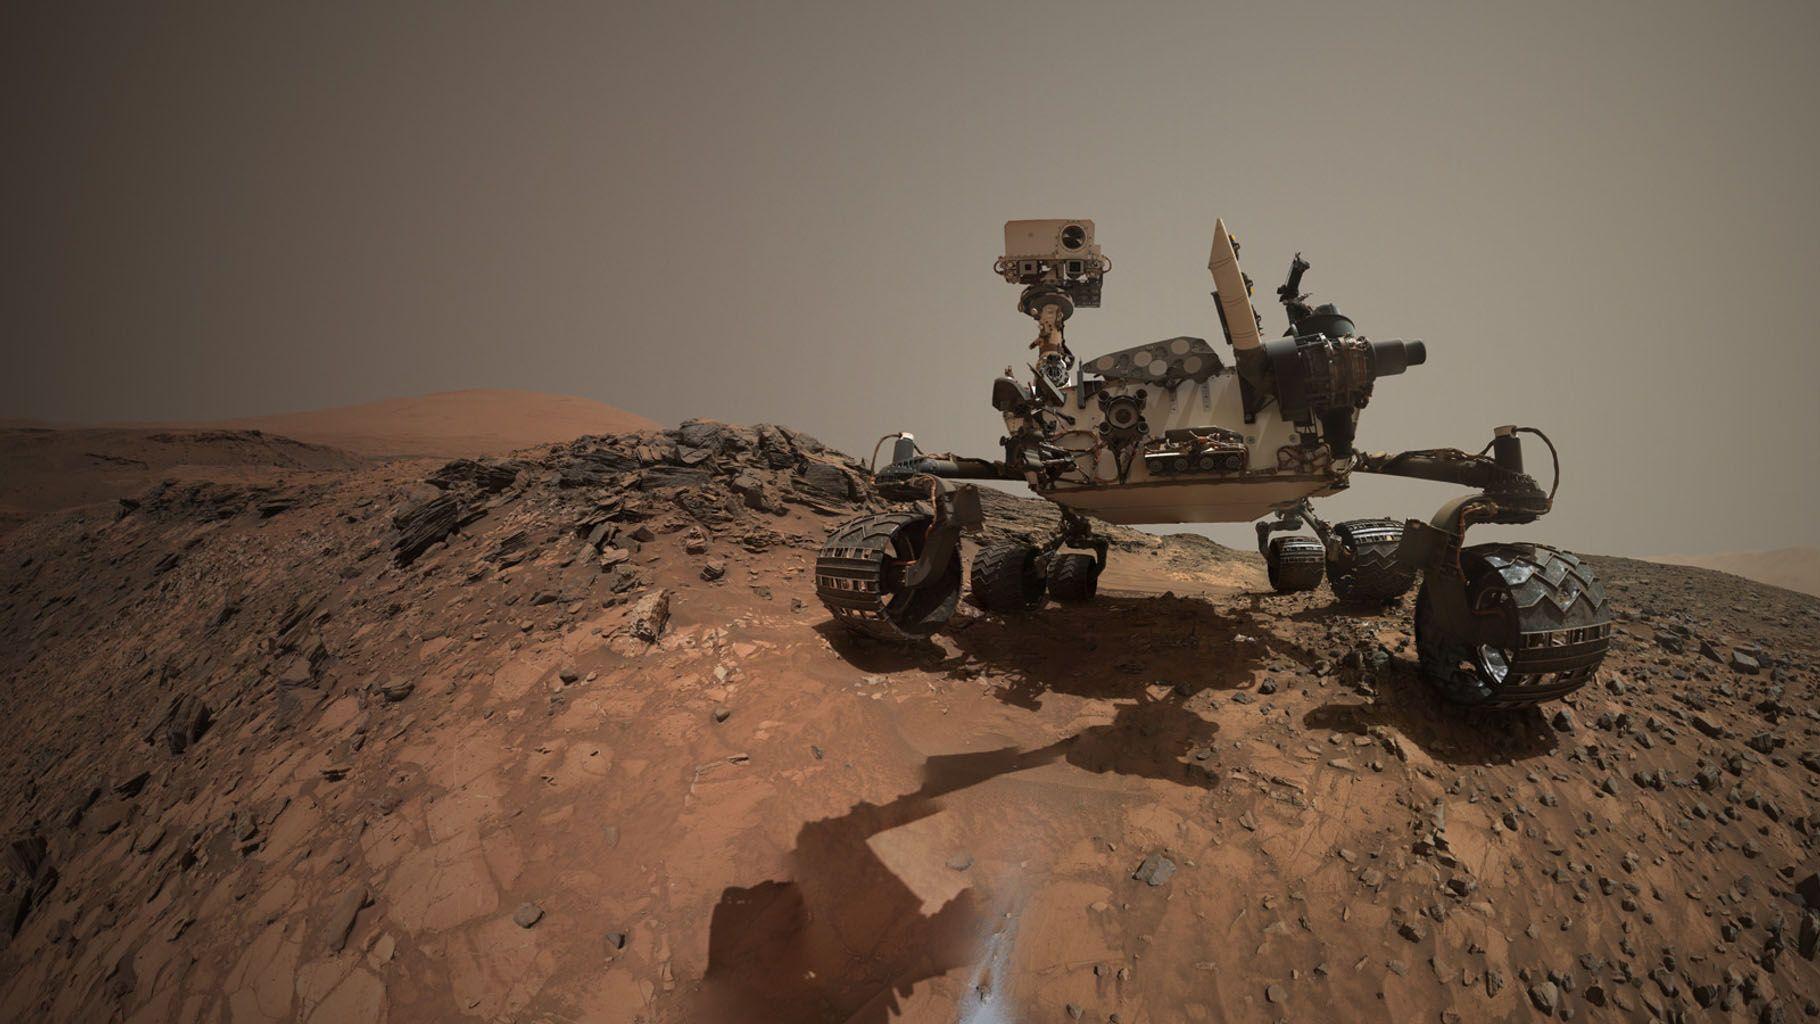 Space Image. Looking Up at Mars Rover Curiosity in 'Buckskin' Selfie